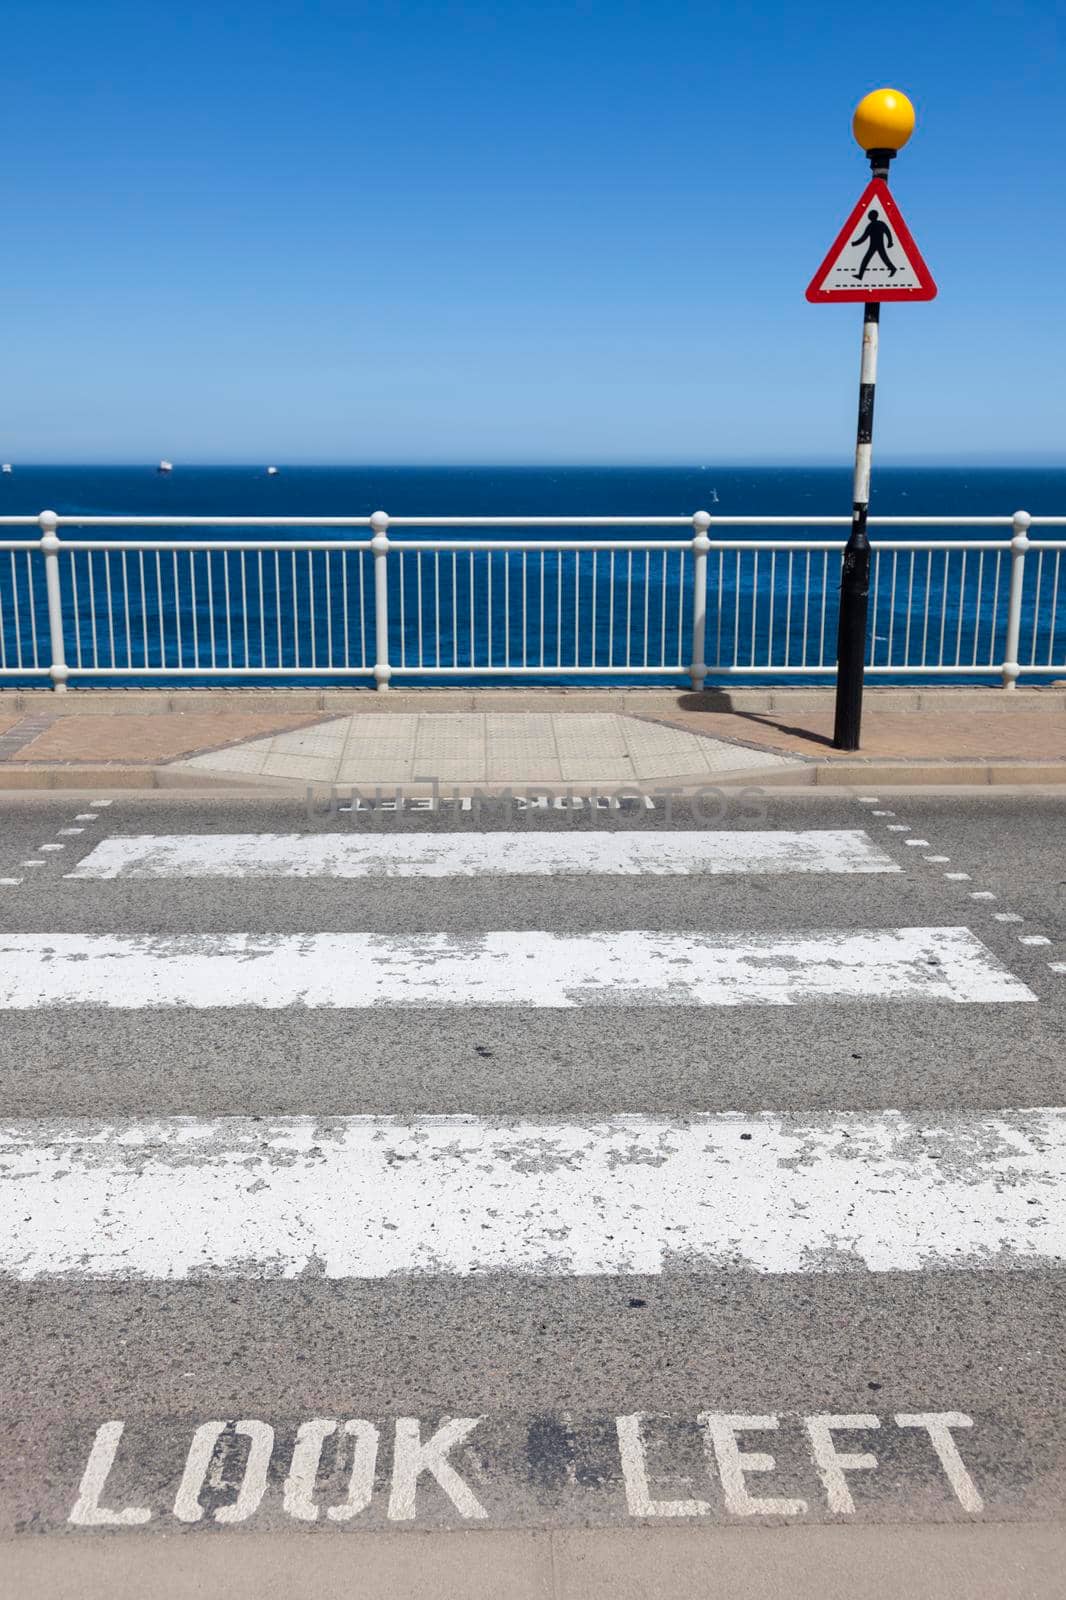 Look left - seen in Gibraltar by benkrut